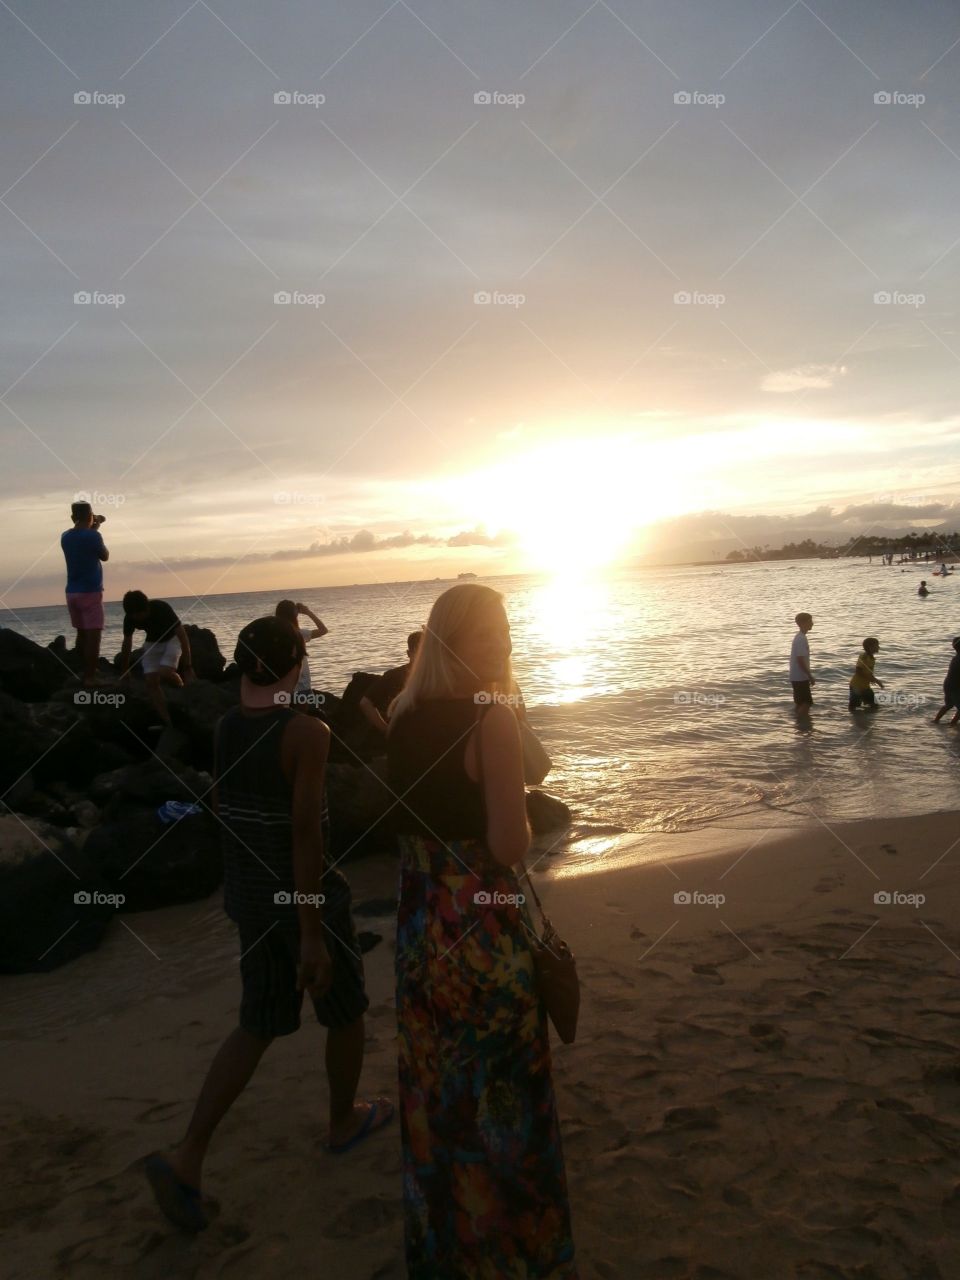 Waikiki sunset. Watching the sun go down